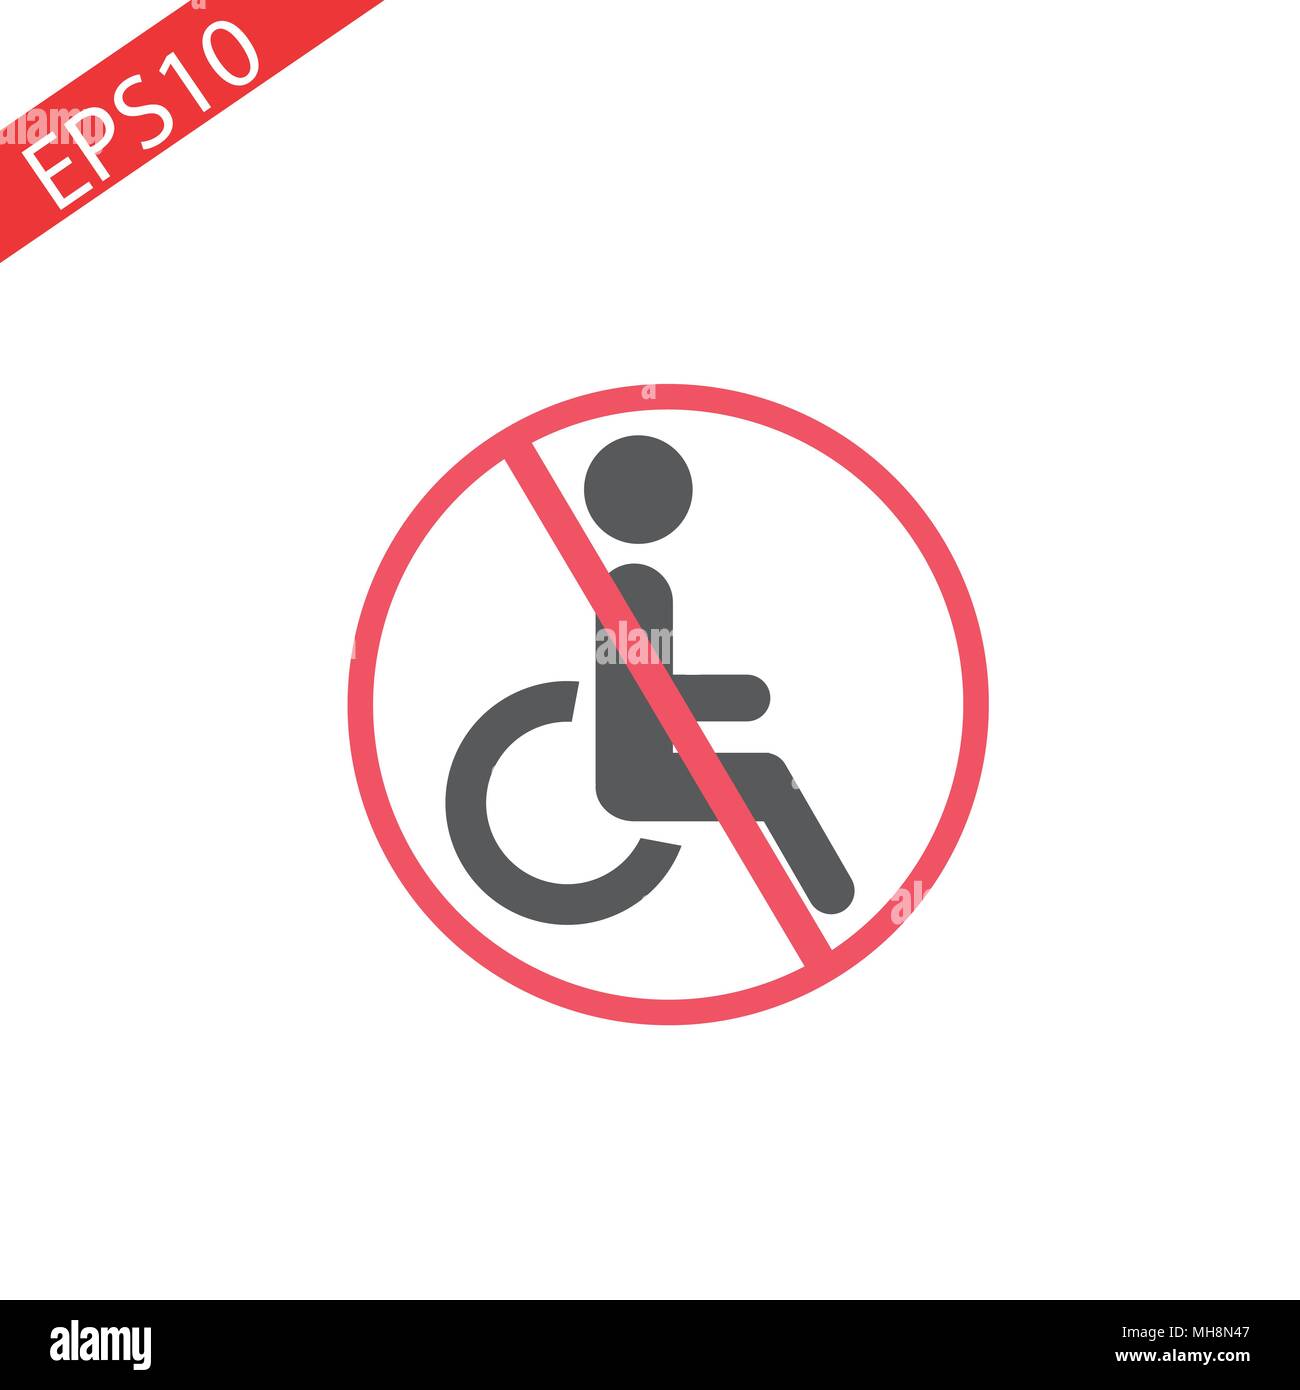 Mobilité signer dans le cercle rouge sur fond blanc. L'icône de l'handicapé isolé sur fond blanc. Non, l'interdiction ou de panneaux d'arrêt. L'interdiction de signer pour Illustration de Vecteur